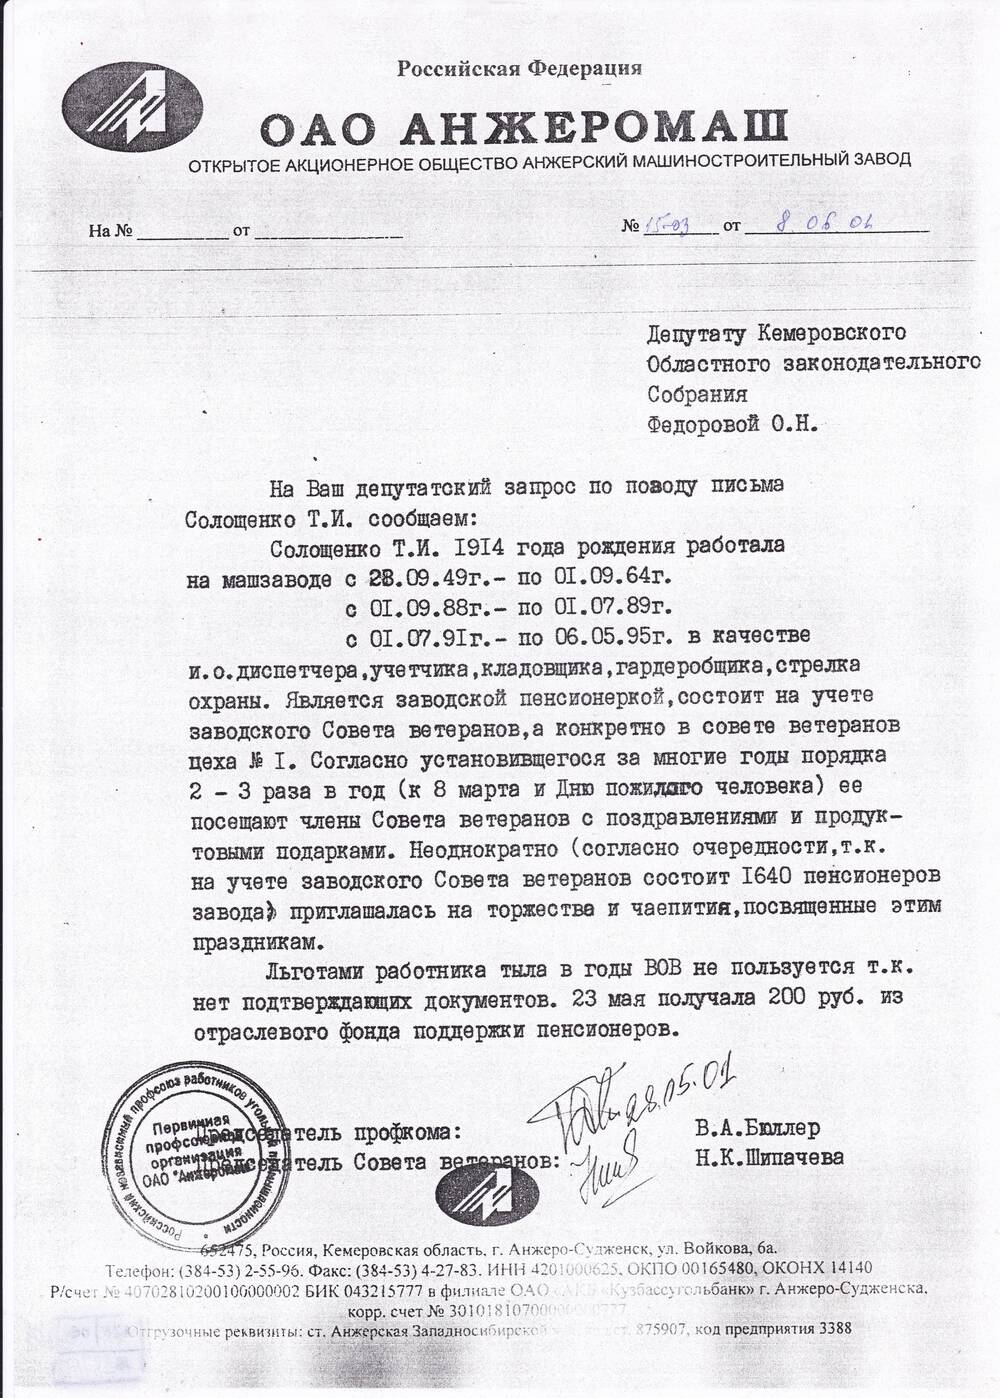 Ответ на депутатский запрос Федоровой О.Н. от 08.06.2001 г.